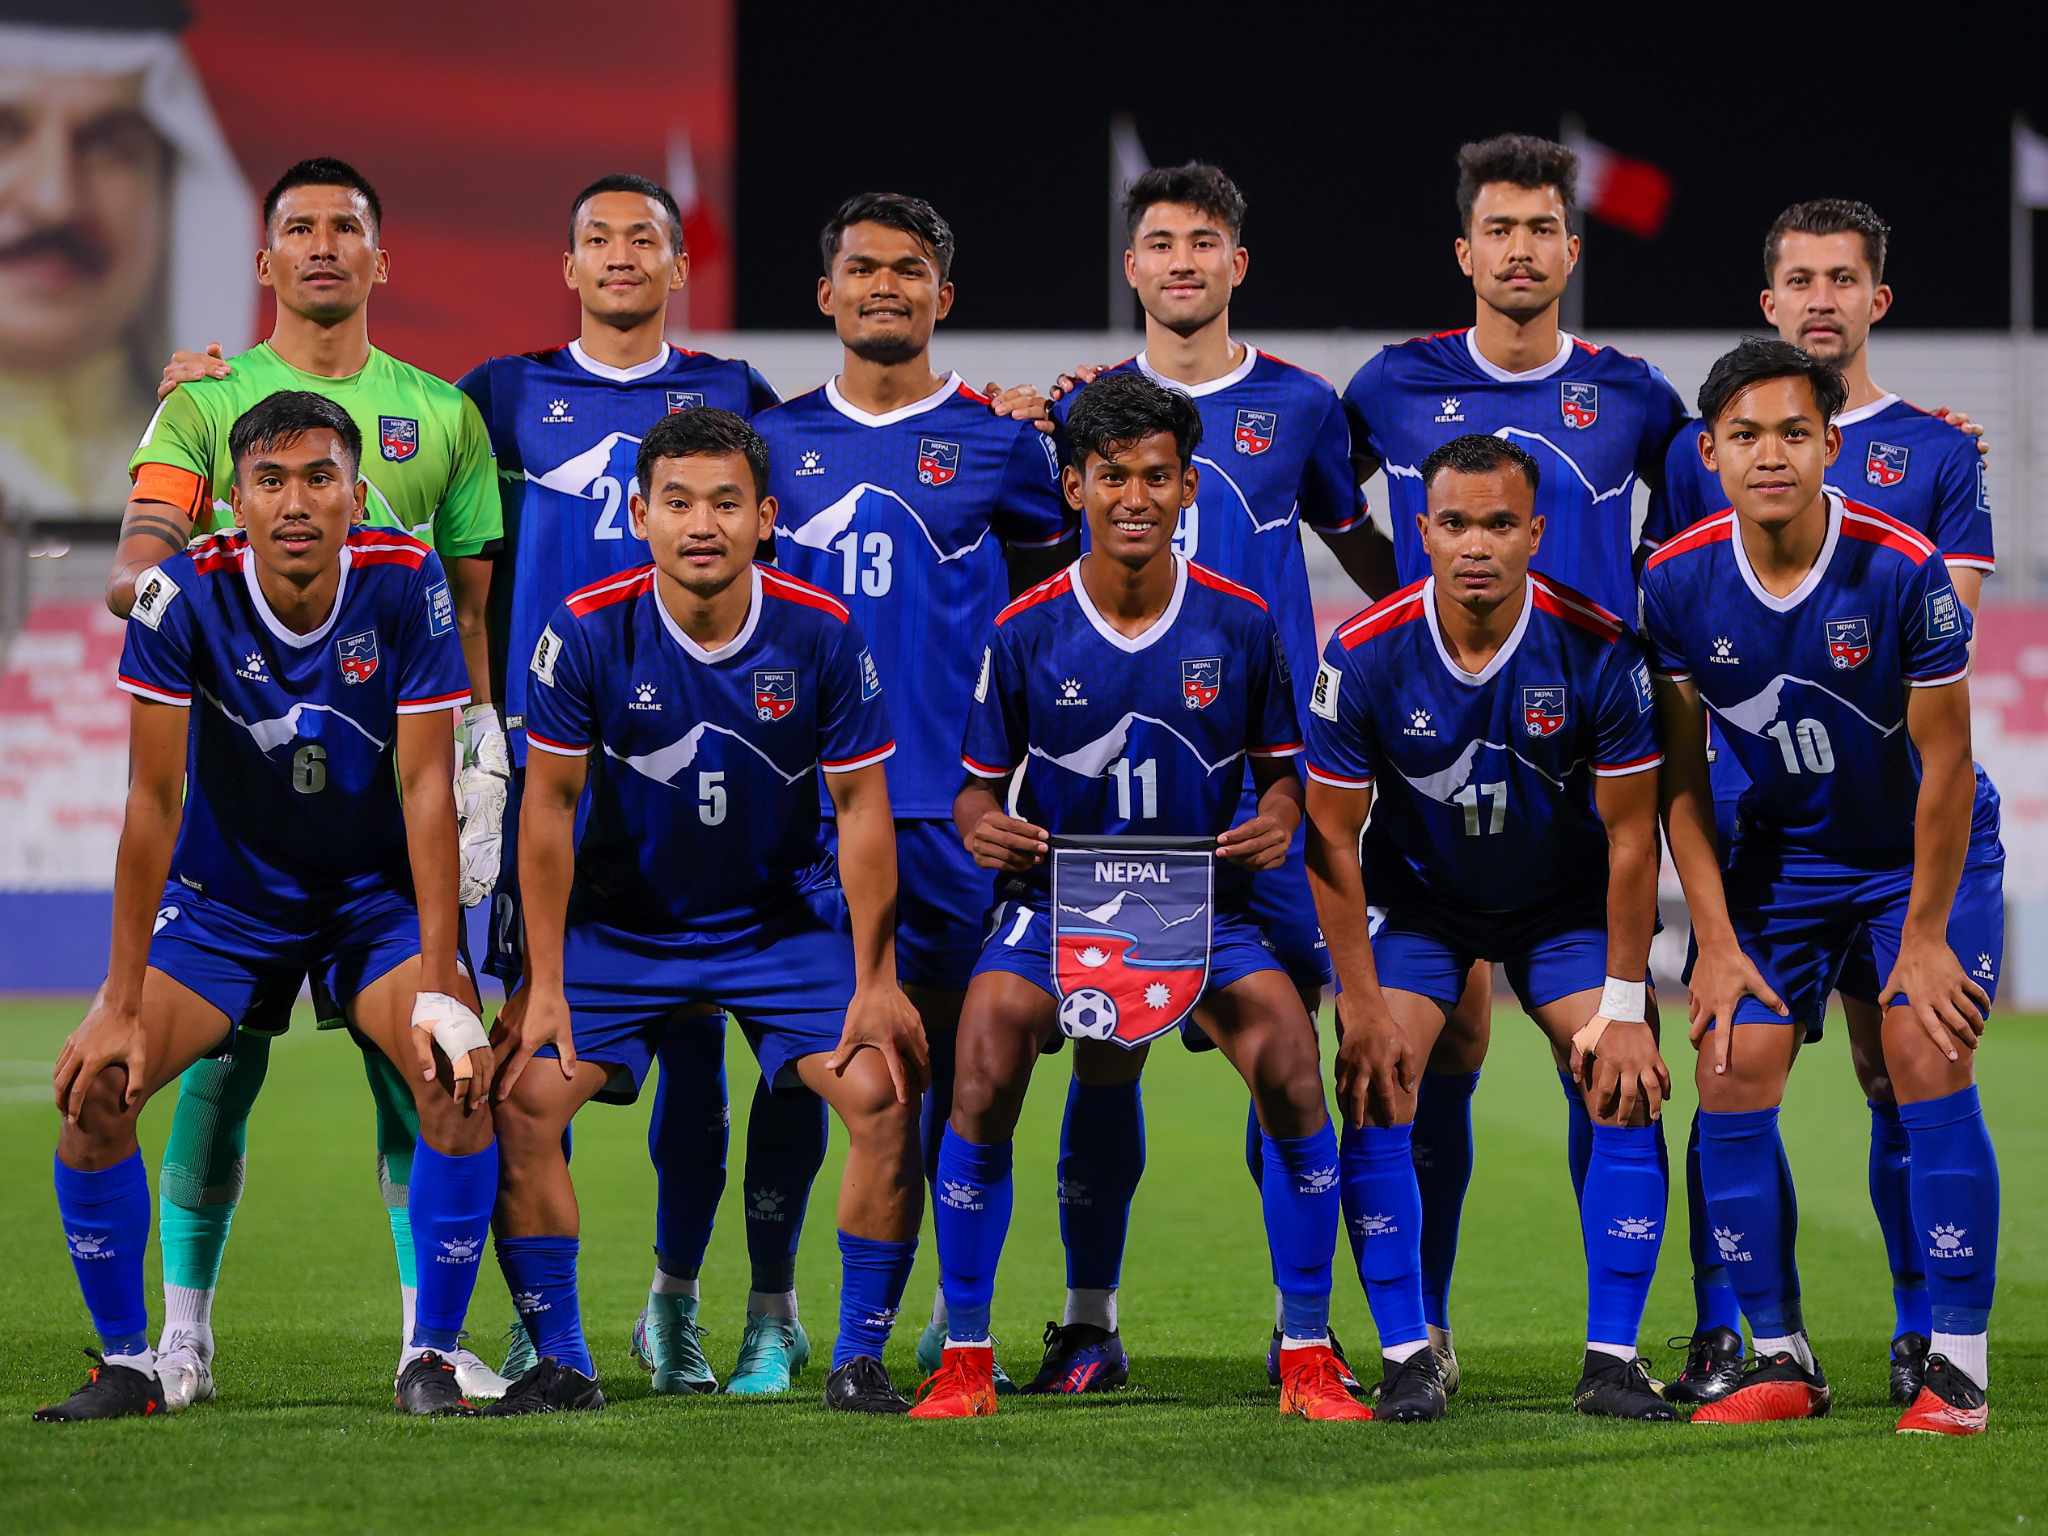 Nepali football team 2080-12-13